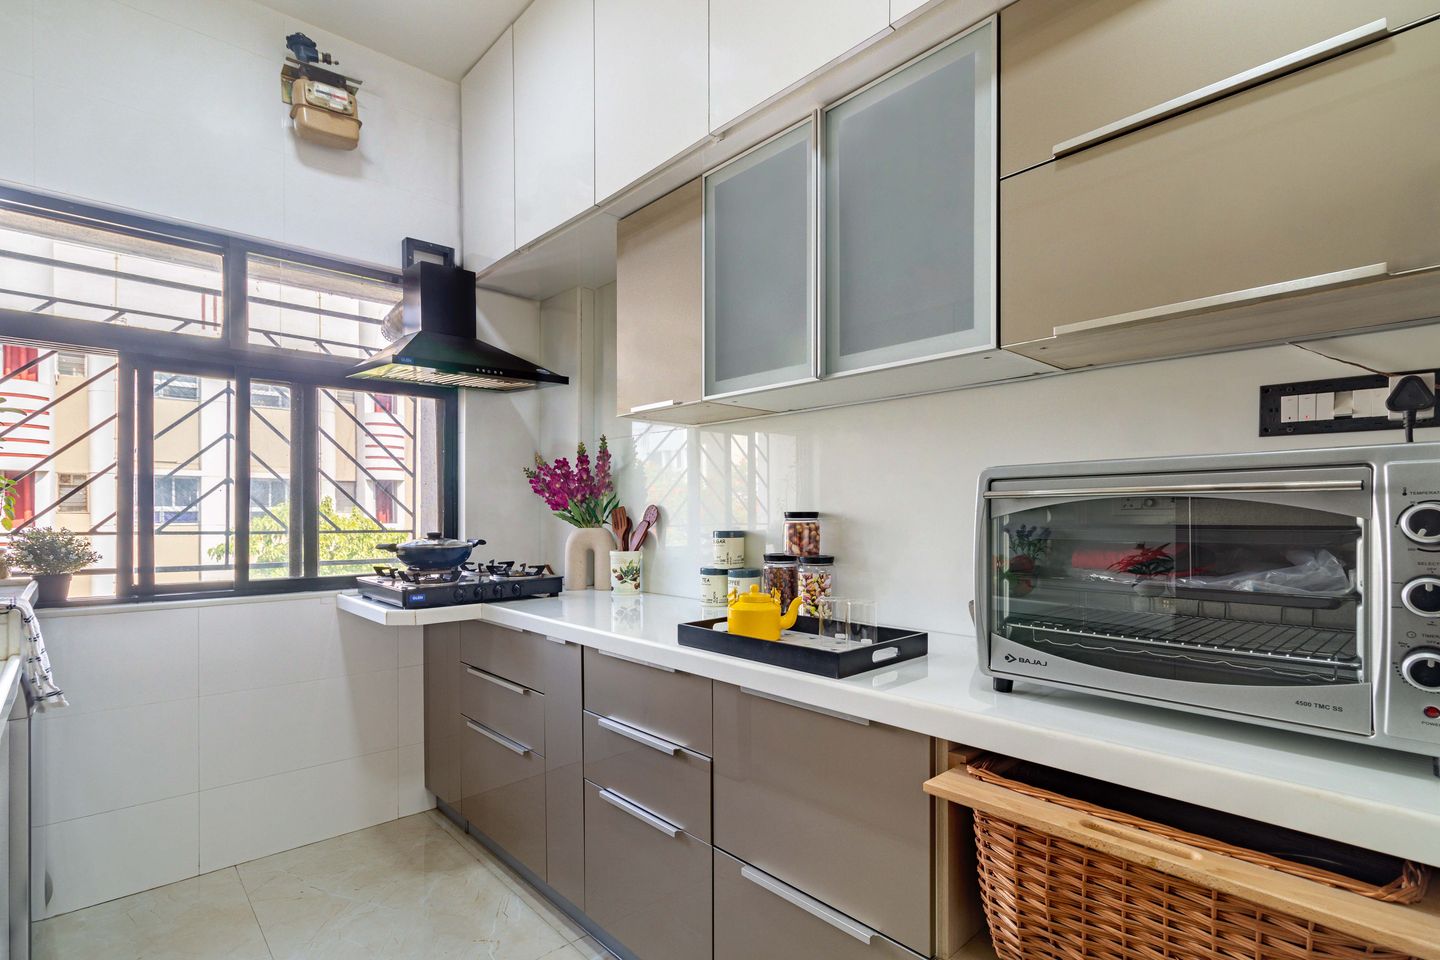 10x7 Ft Parallel Kitchen Design With A Quartz Countertop - Livspace